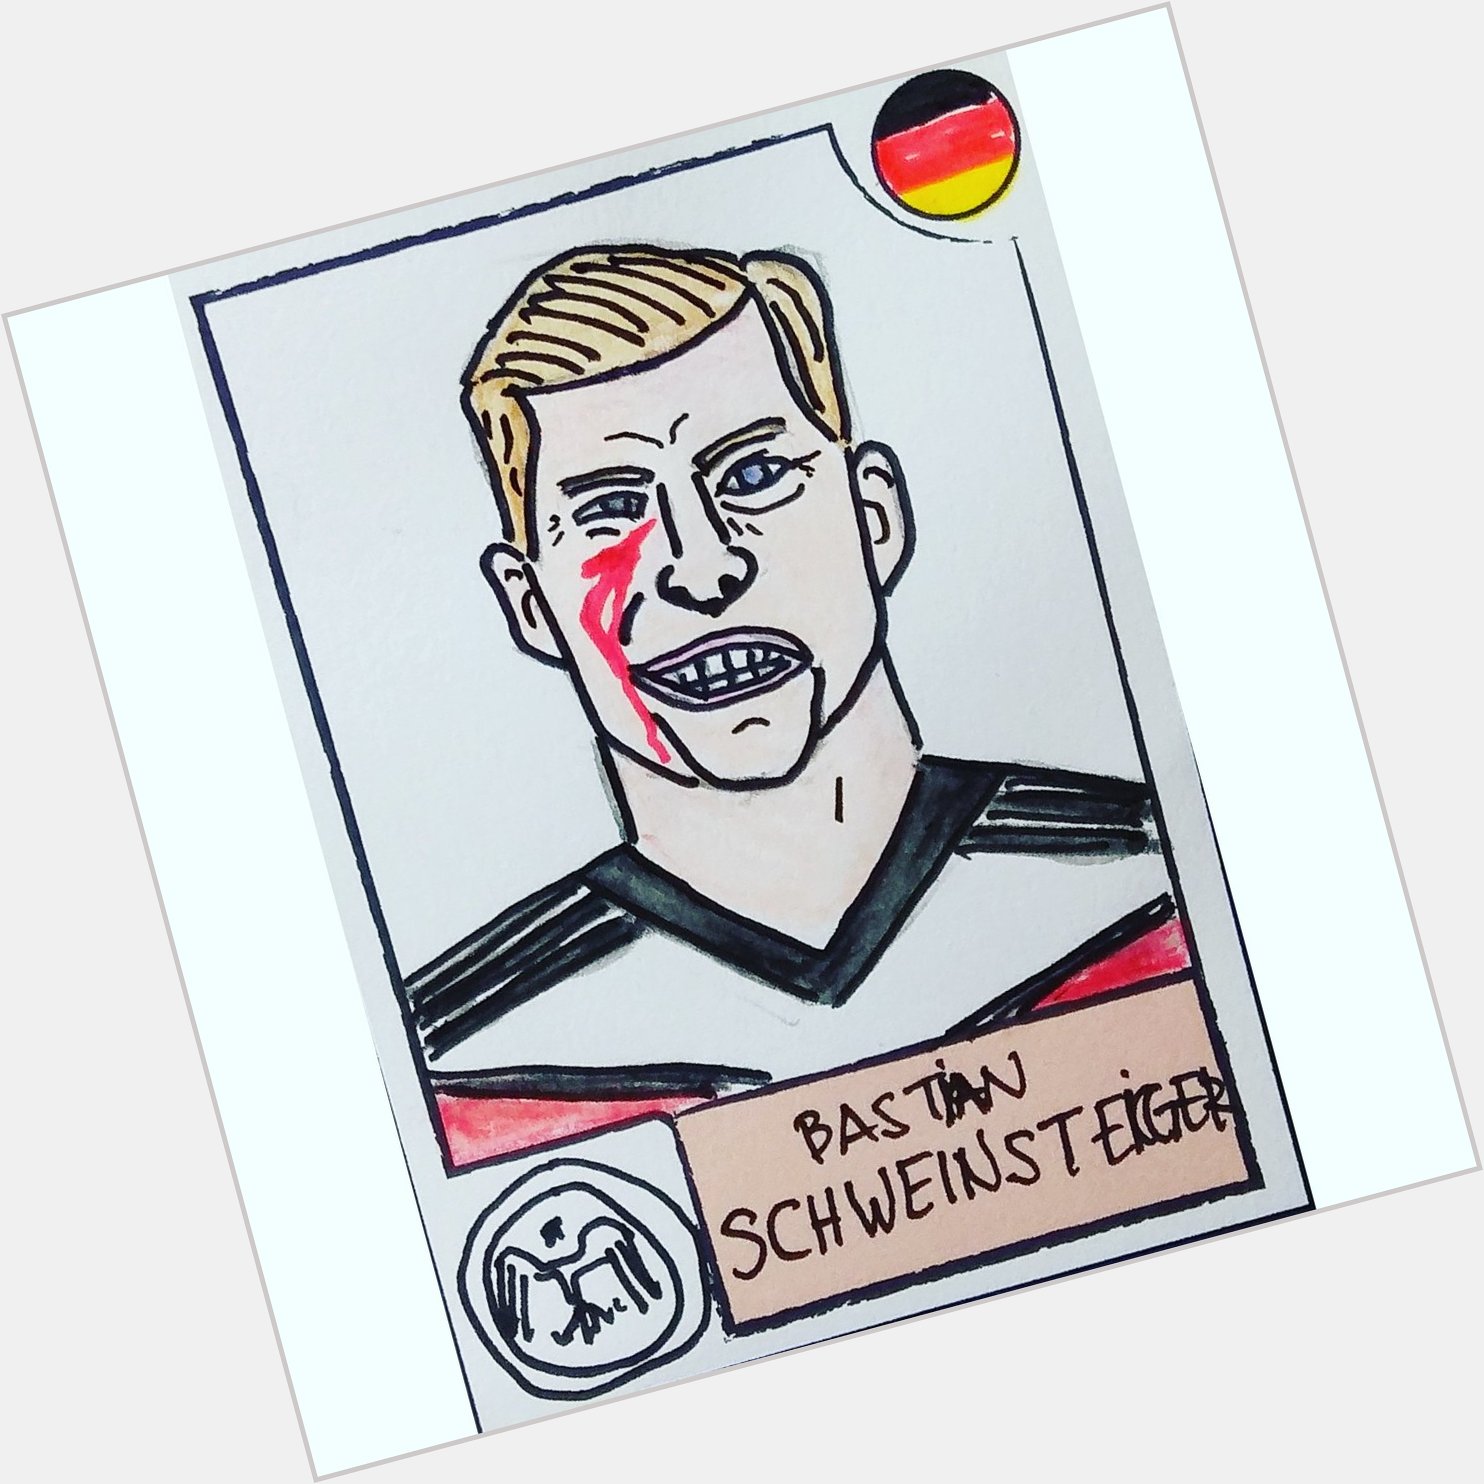 Happy birthday, Bastian Schweinsteiger. 